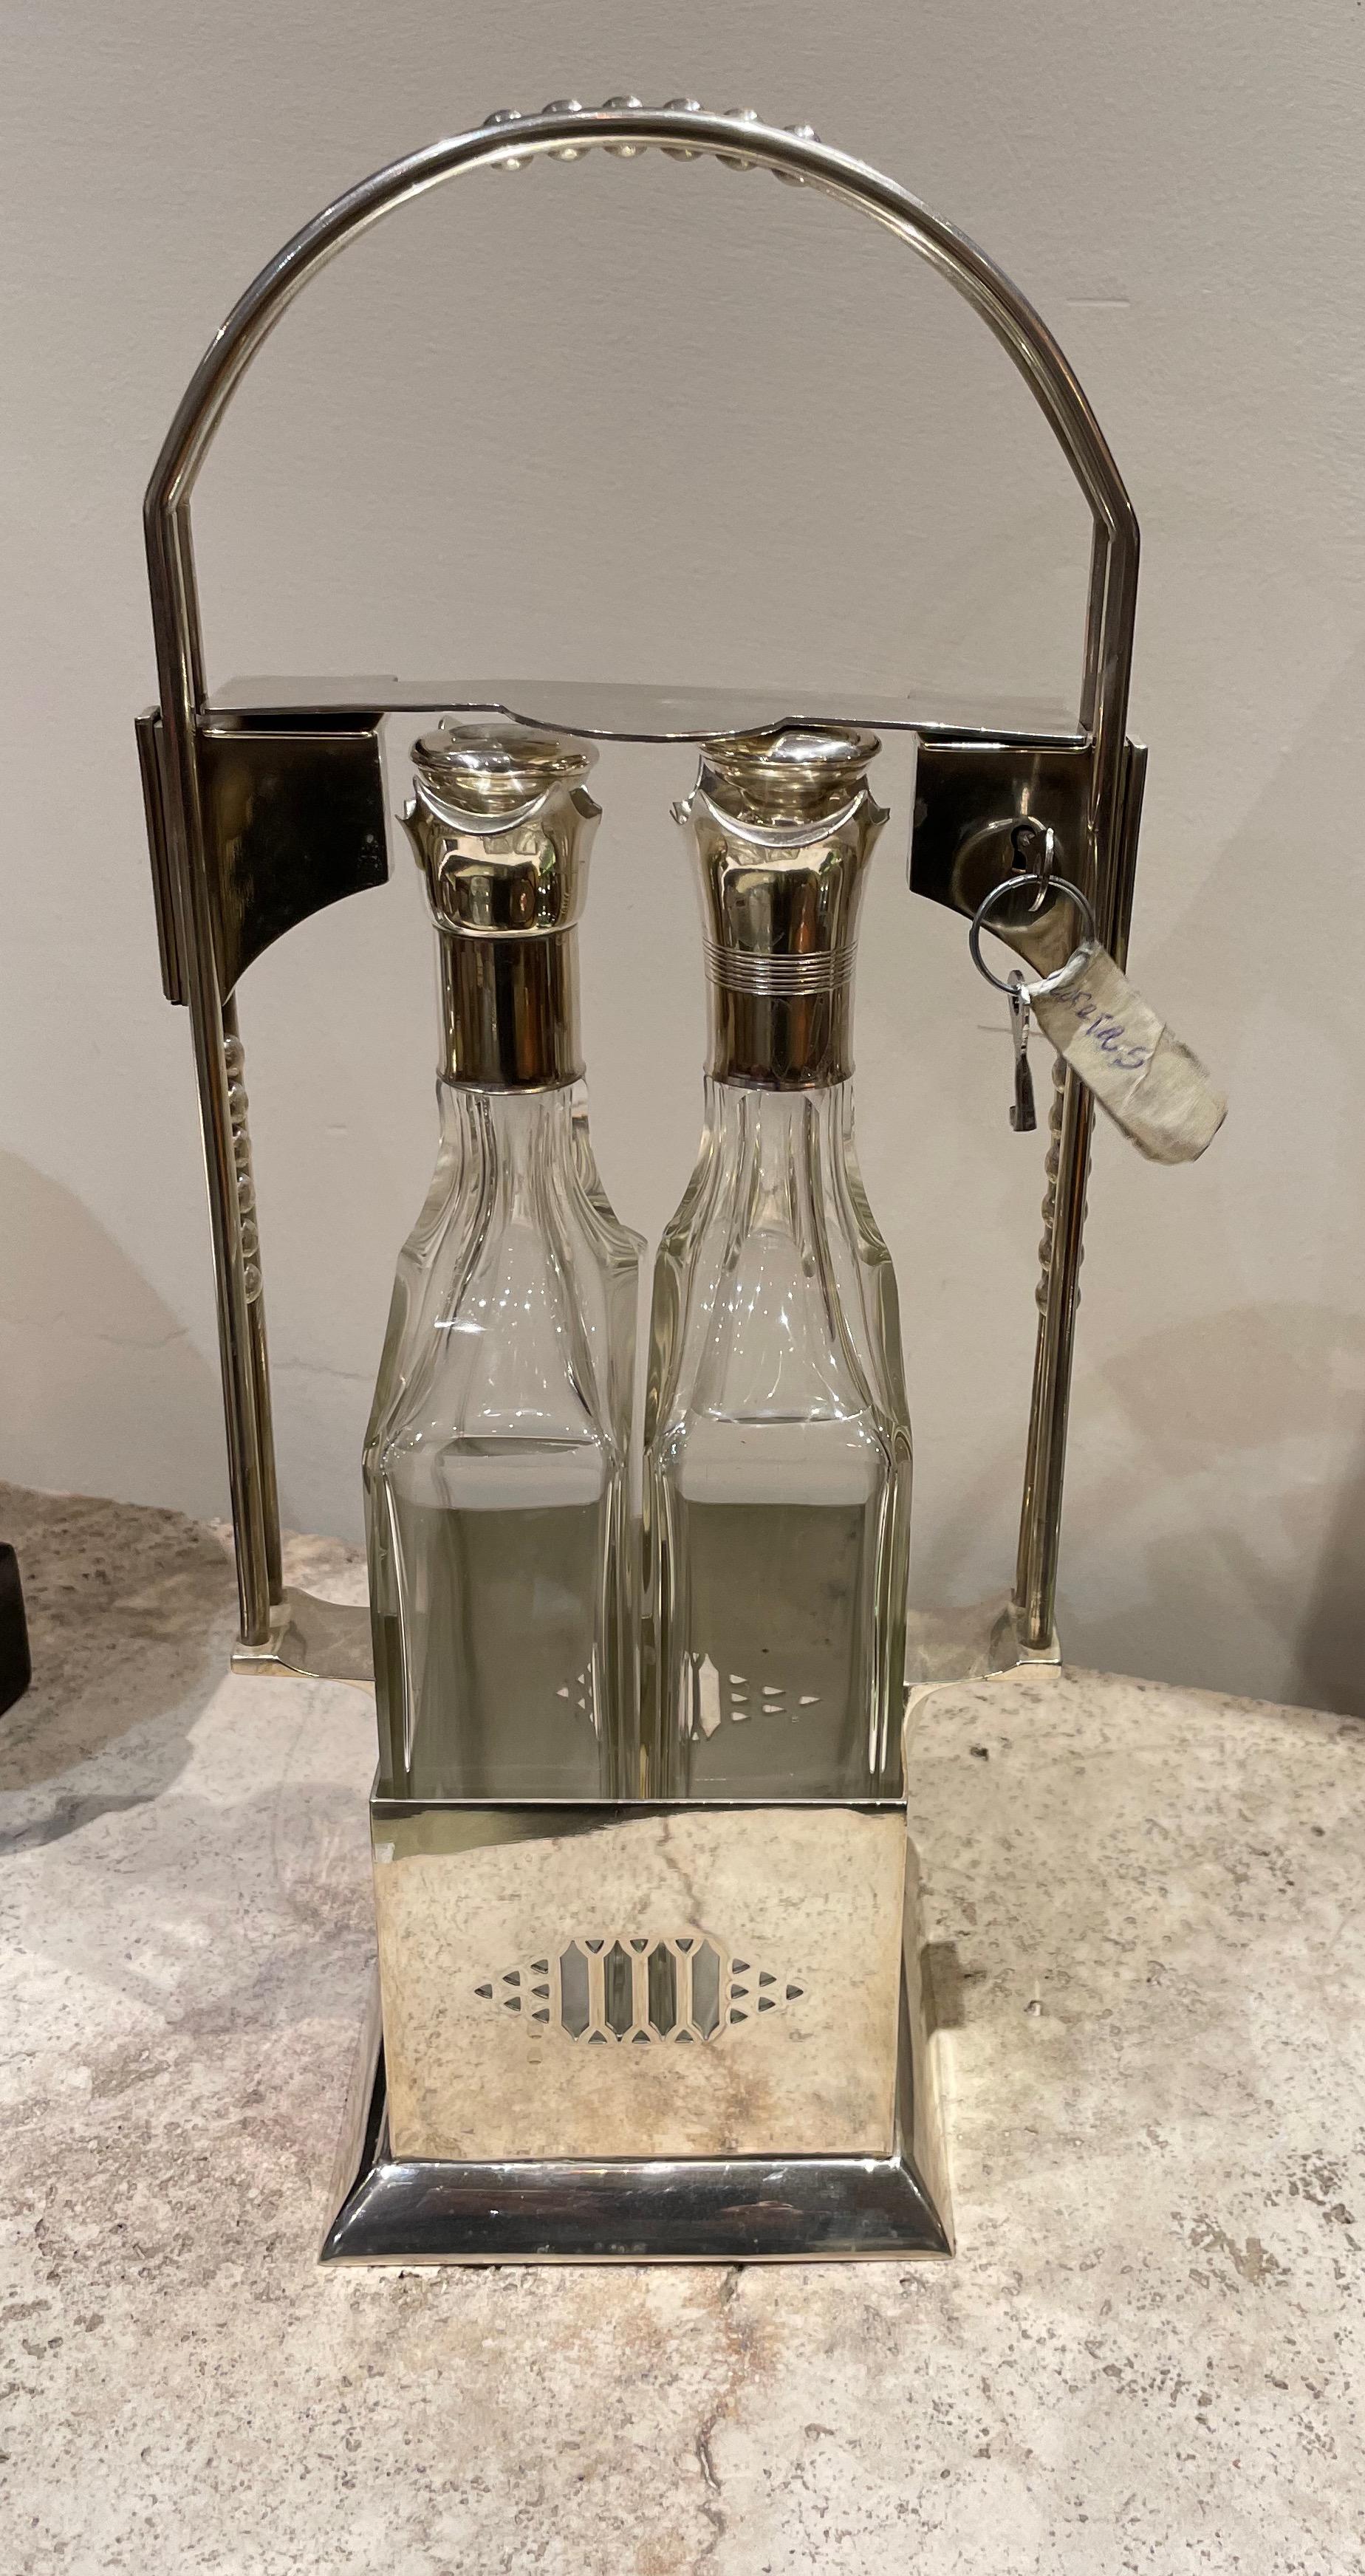 Jugendstil Tantalus Zwei Flaschen versilbert Vintage Likör Set. Dieses elegante Set wurde kürzlich restauriert und befindet sich in einem neuwertigen Zustand. Das Originalschloss funktioniert und hält beide Flaschen unten, um die Verschlüsse zu